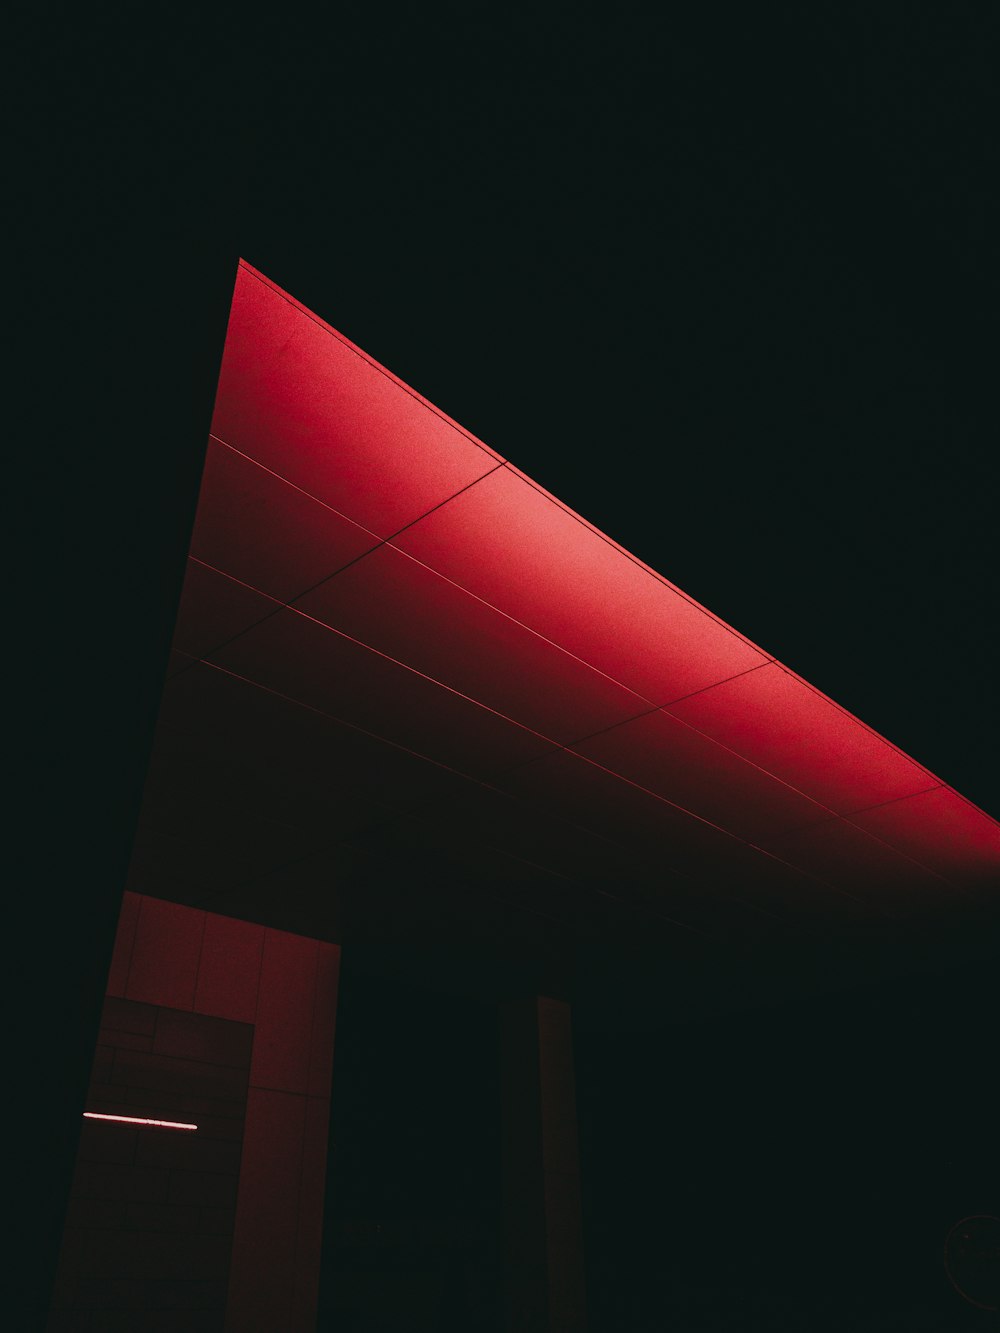 plafond éclairé en rouge